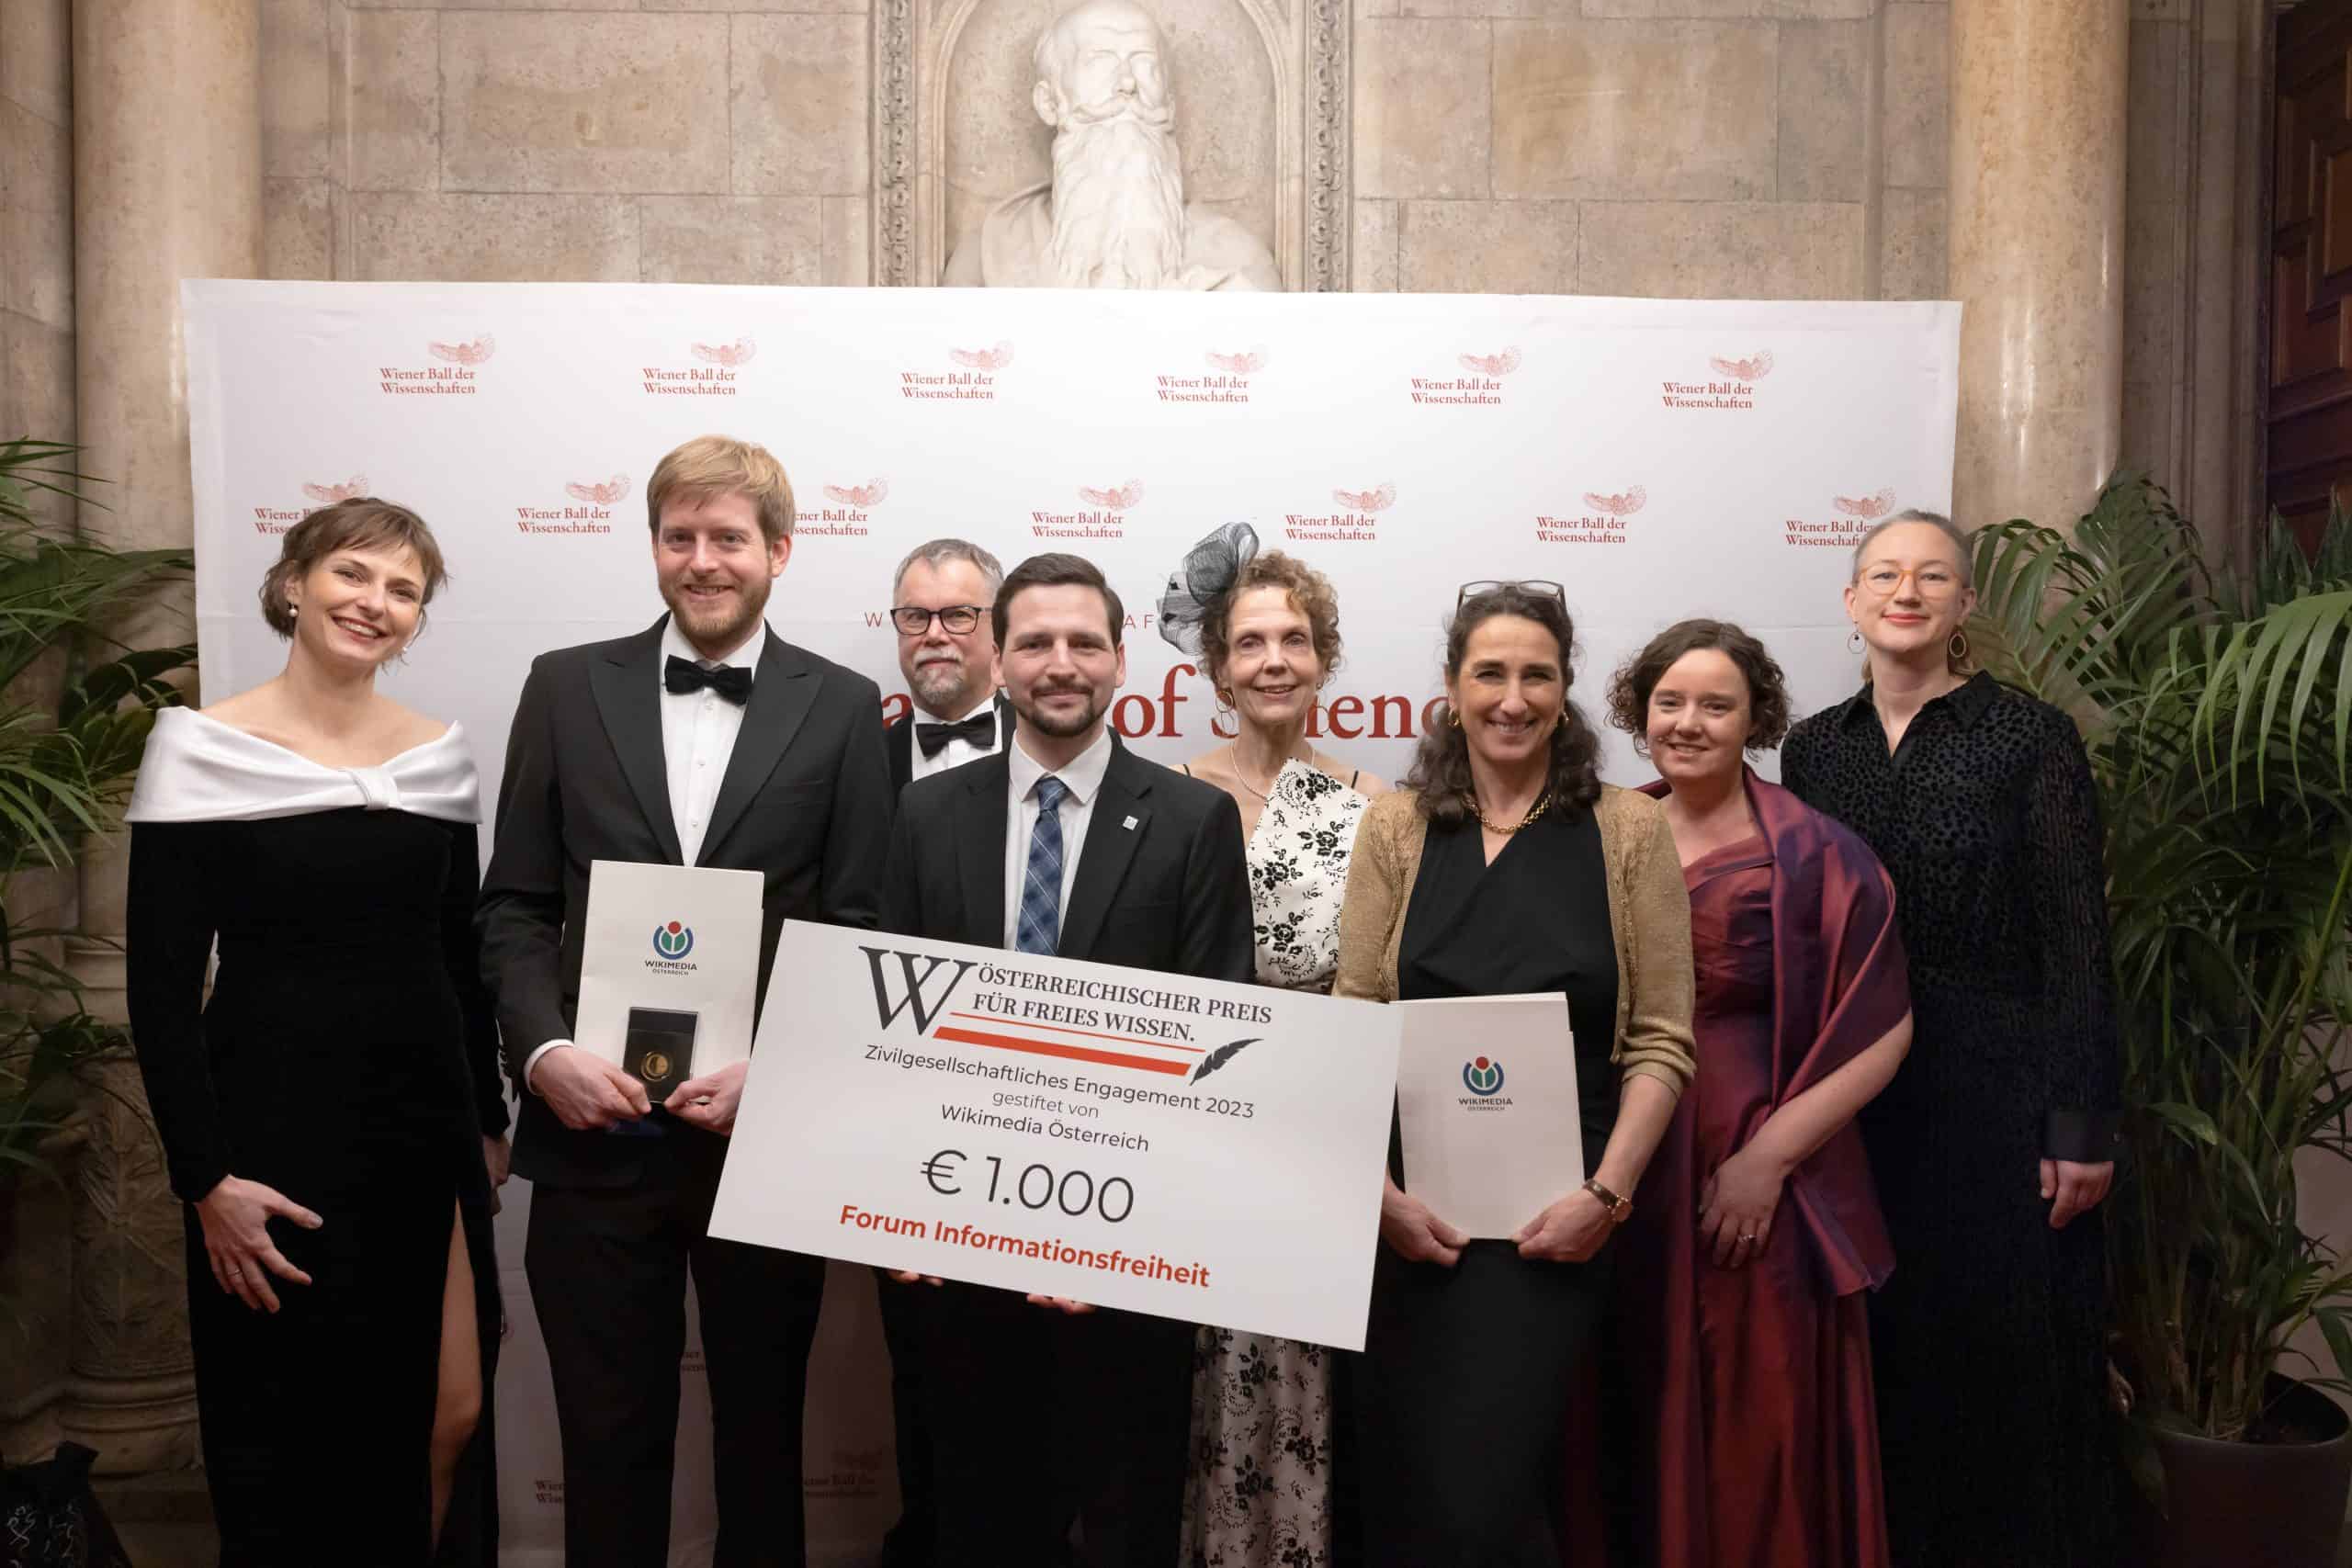 Vertreter:innen von Wikimedia, Forum Informationsfreiheit und Wien Museum bei der Preisverleihung